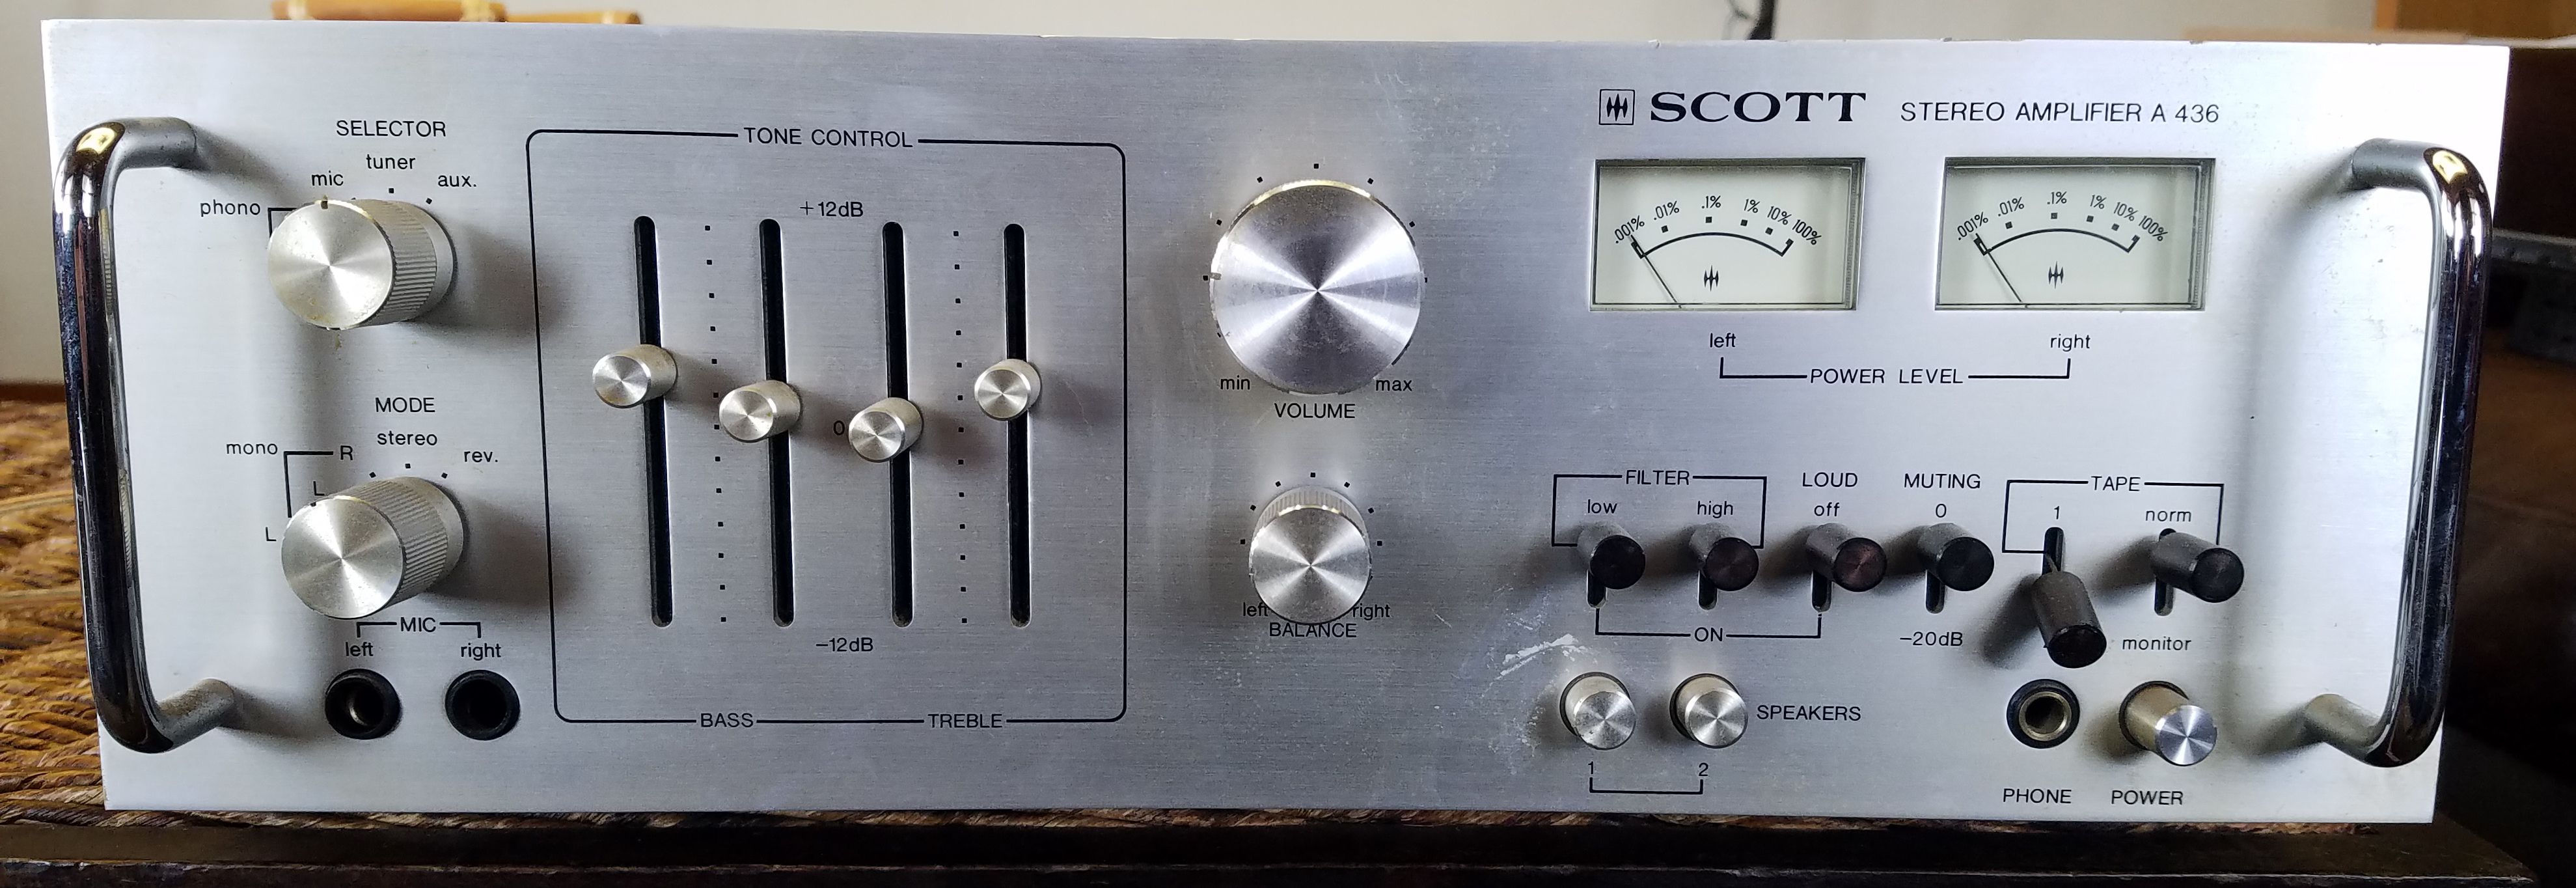 Vintage Scotts amplifier A436